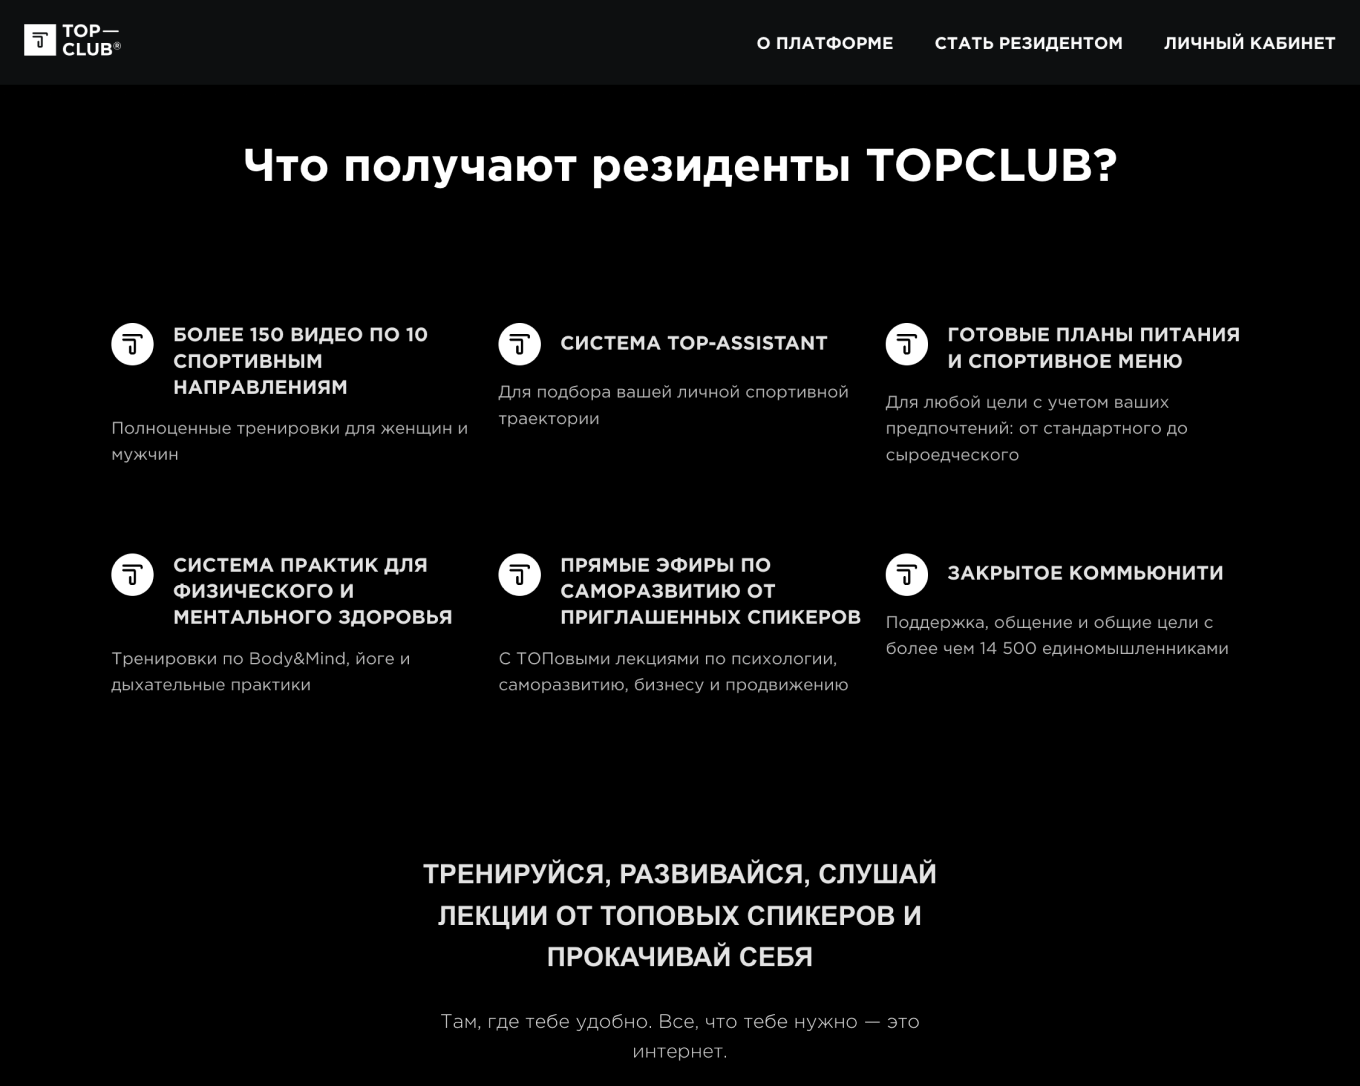 Материалы клуба по подписке TOPCLUB